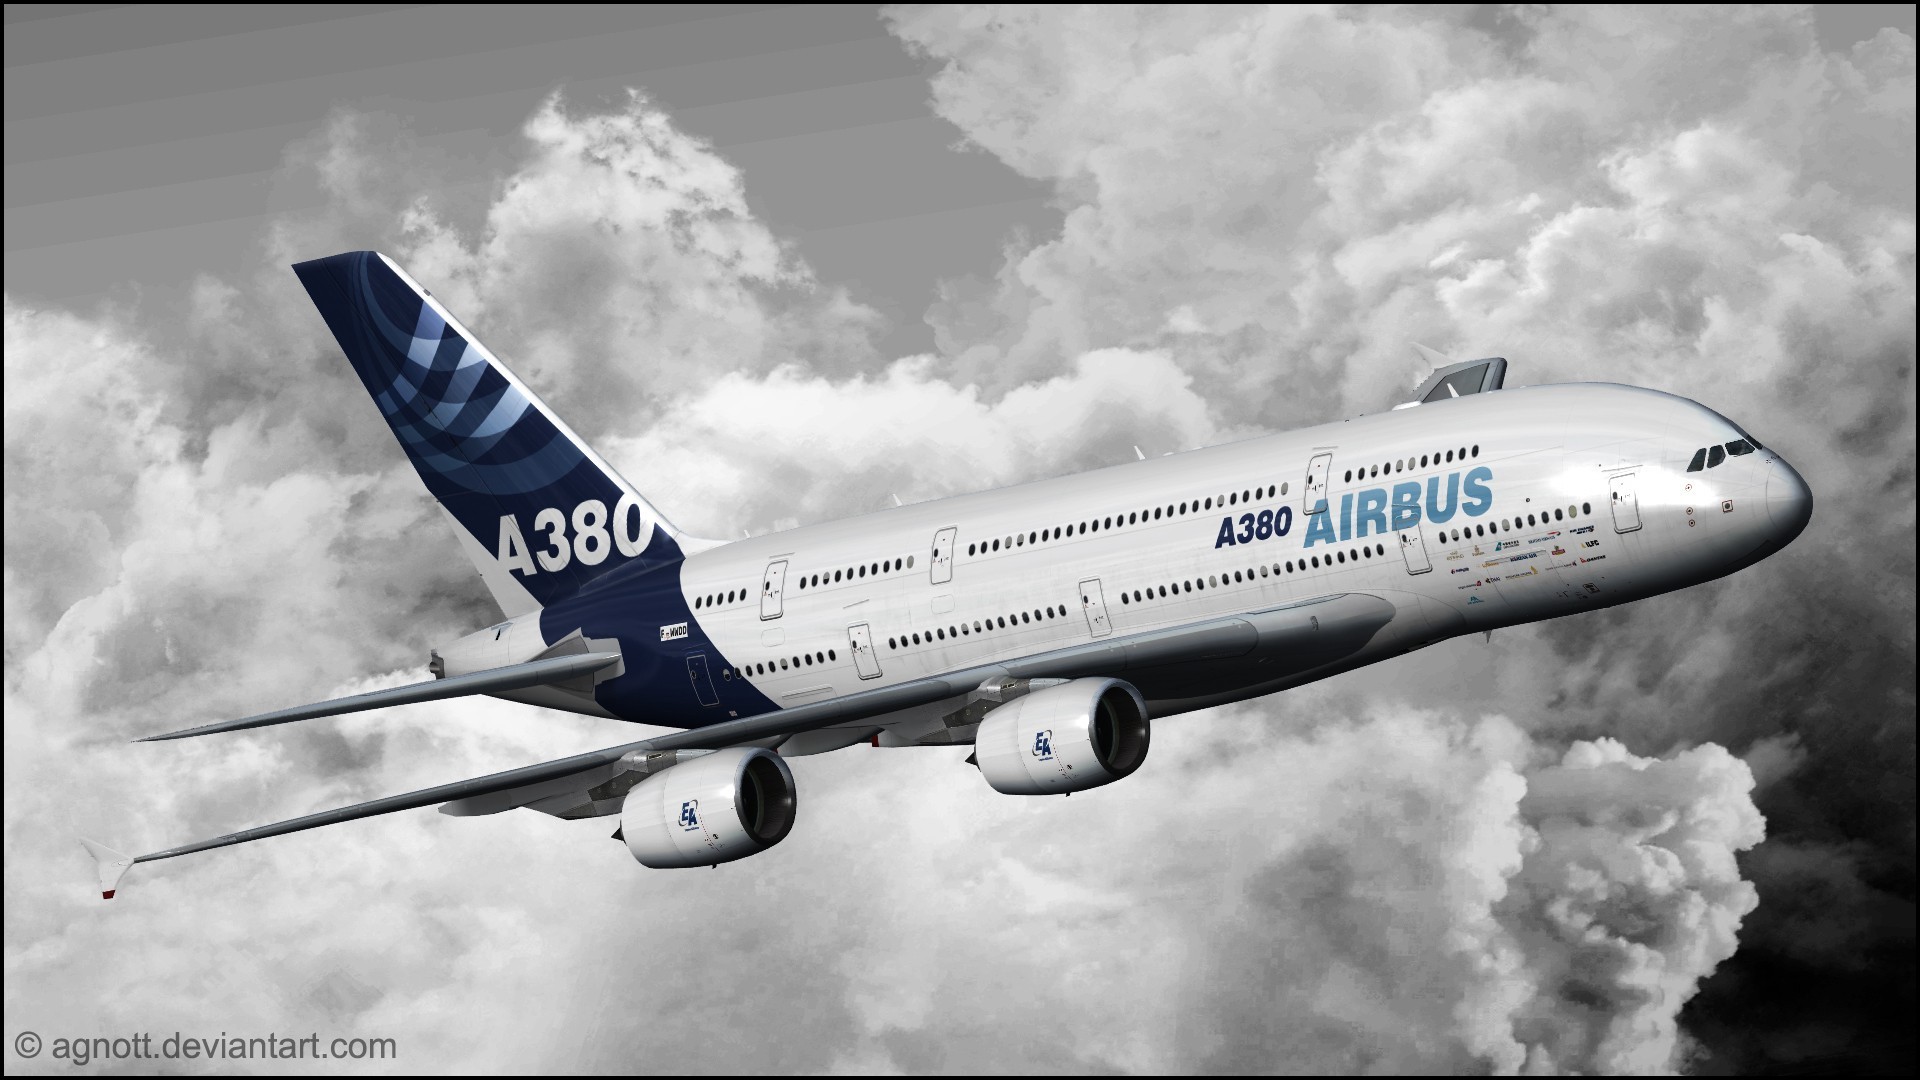 [72+] Airbus A380 Wallpaper on WallpaperSafari